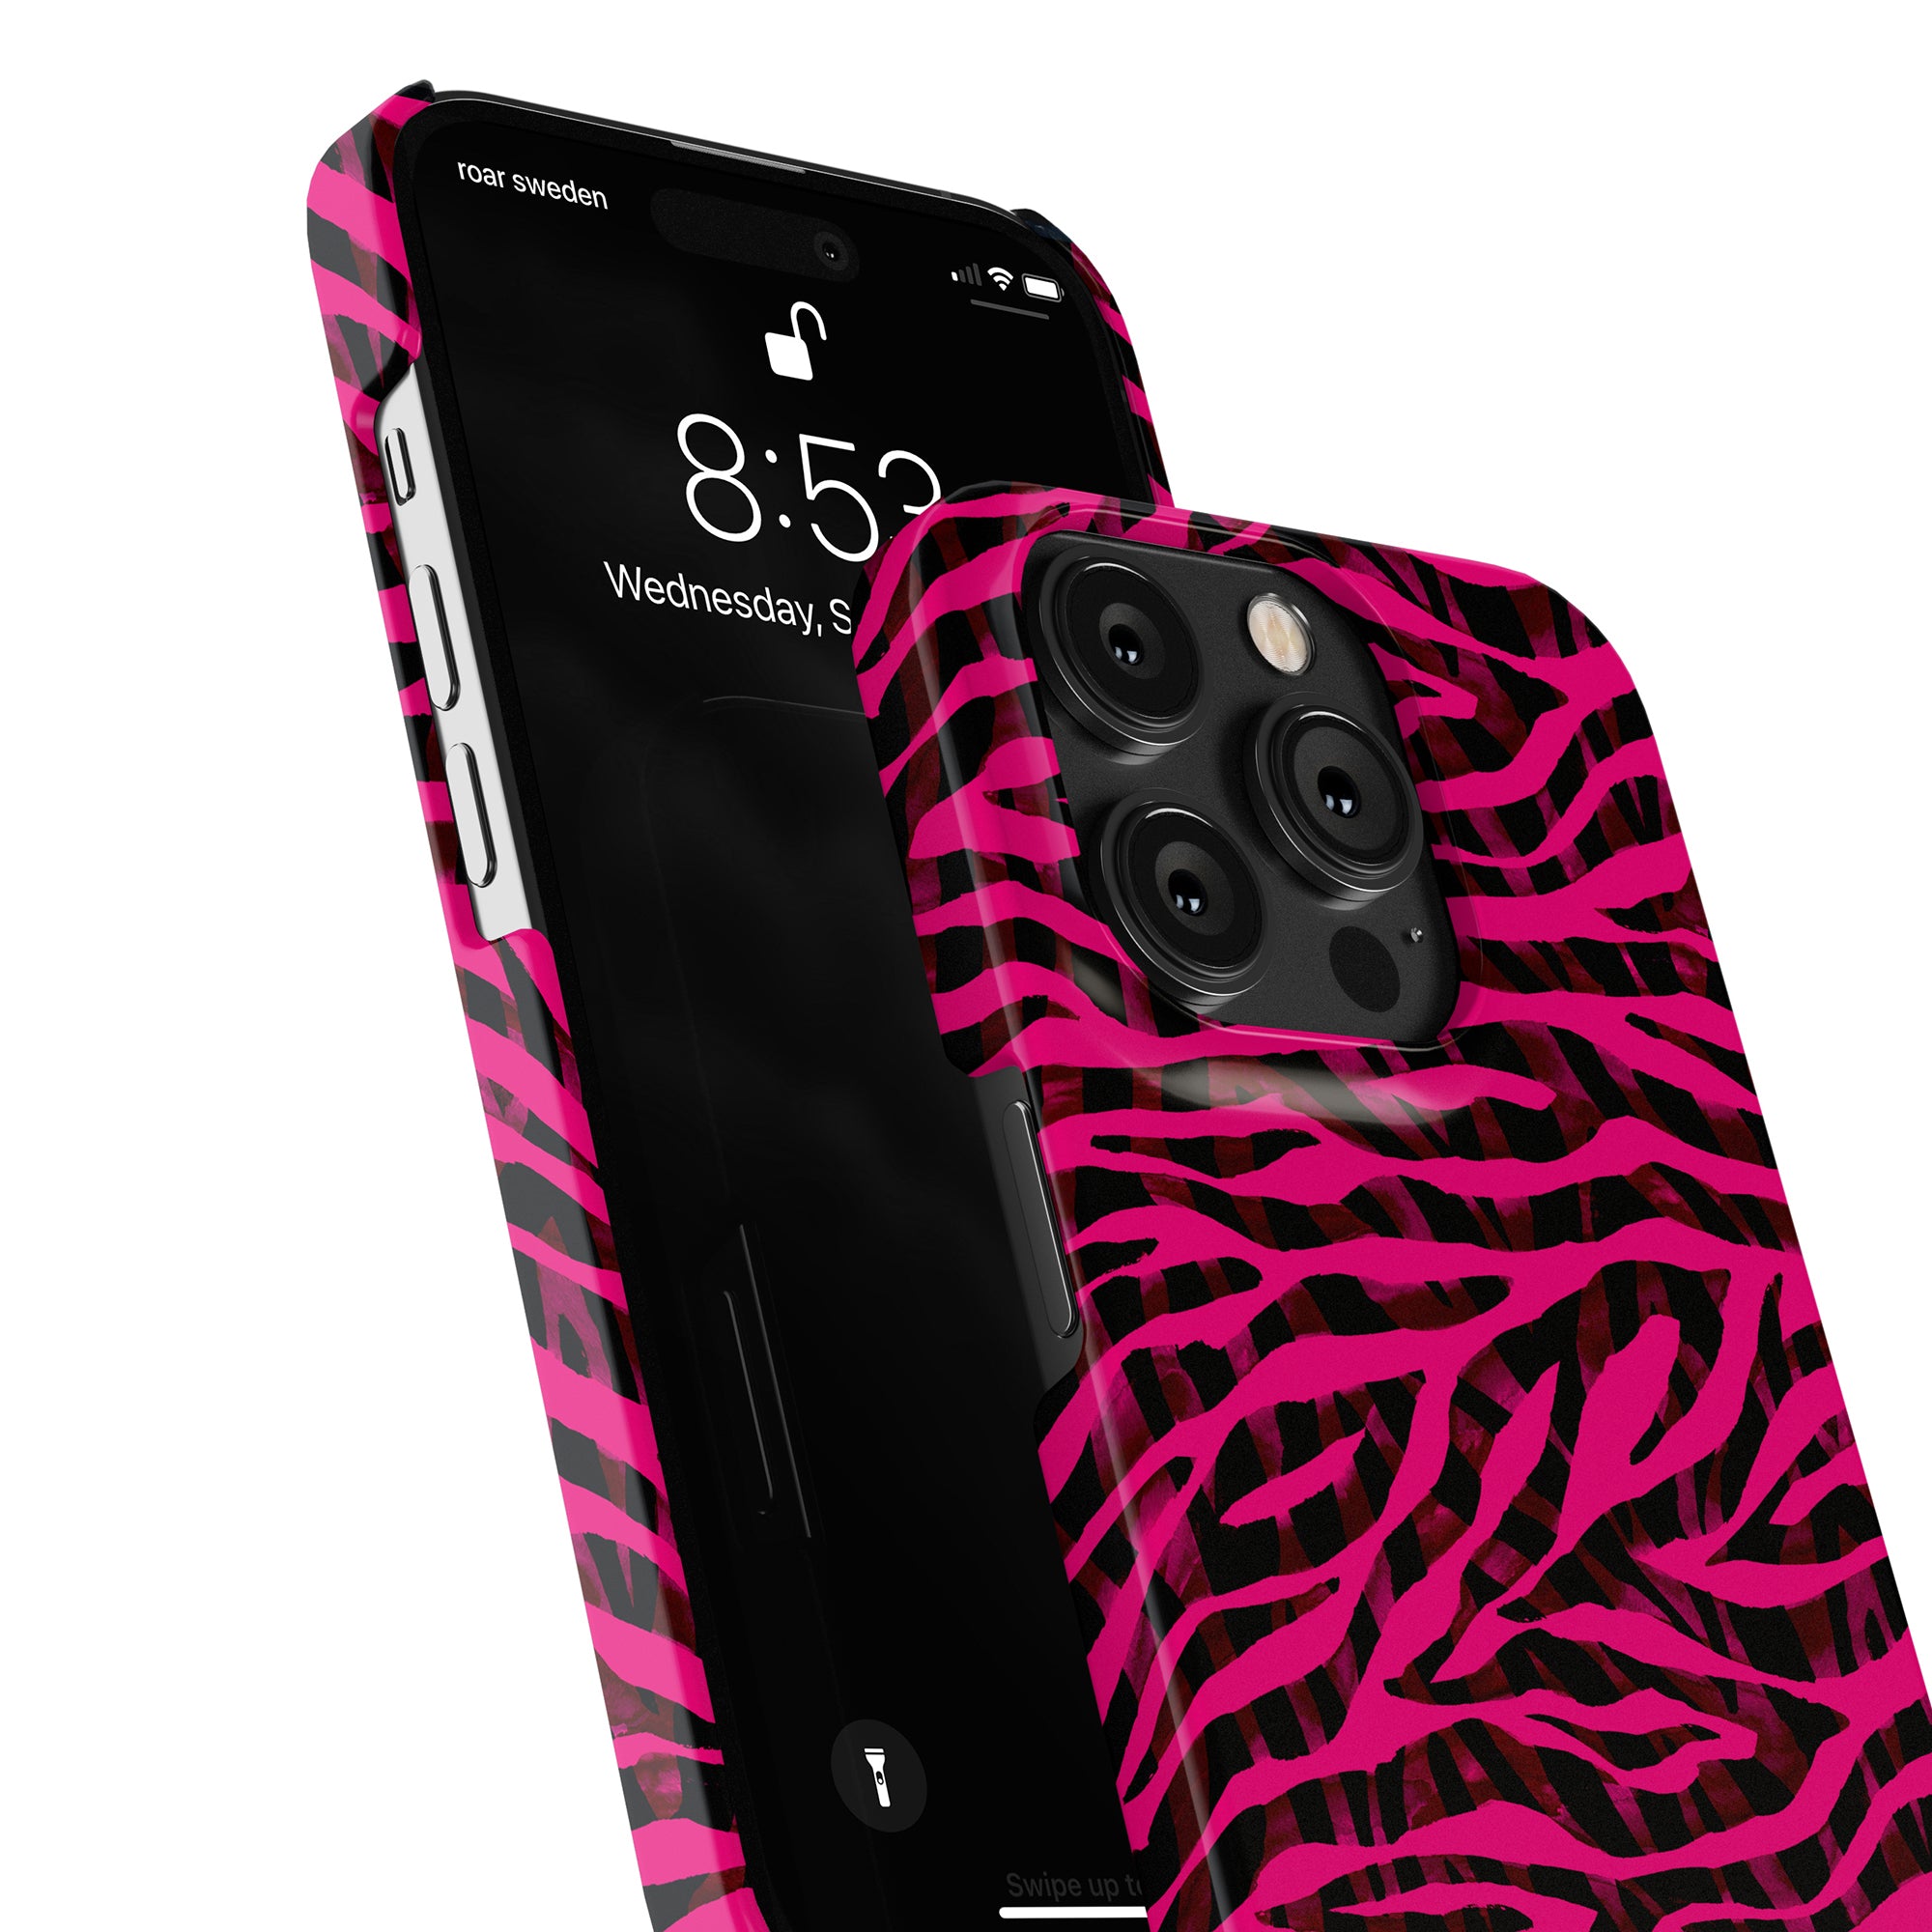 Produktbeskrivning: Förbättra din iPhone 11 med detta snygga Pimp Tiger - Slim fodral, prydd med en fantastisk kombination av rosa och svart. Detta fodral är designat för att skydda din enhet från dagligt slitage